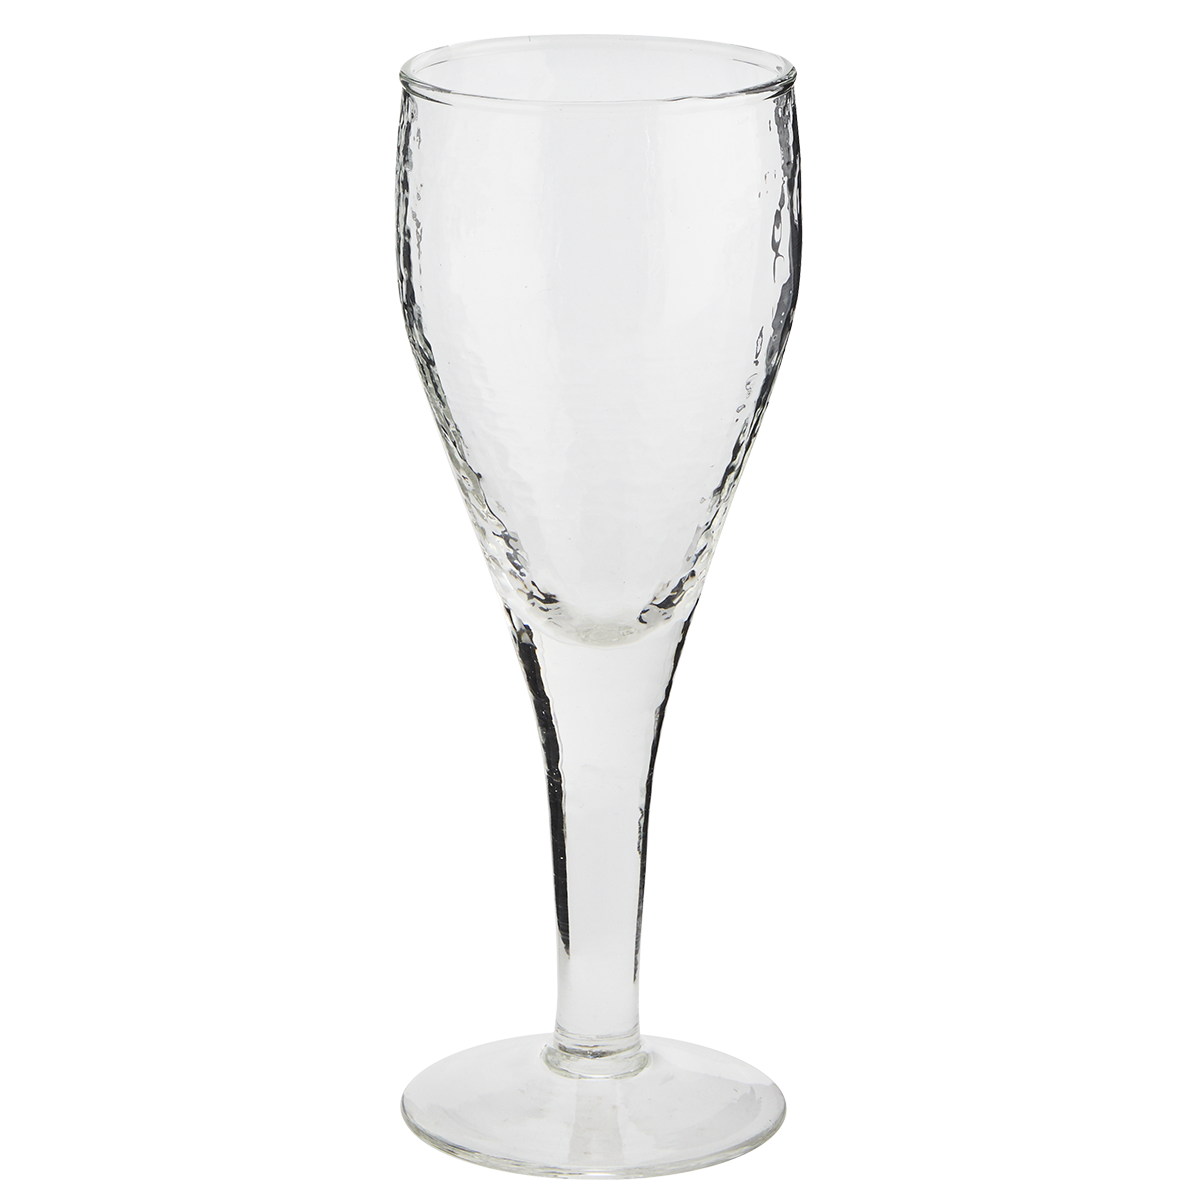 Hammered white wine glass